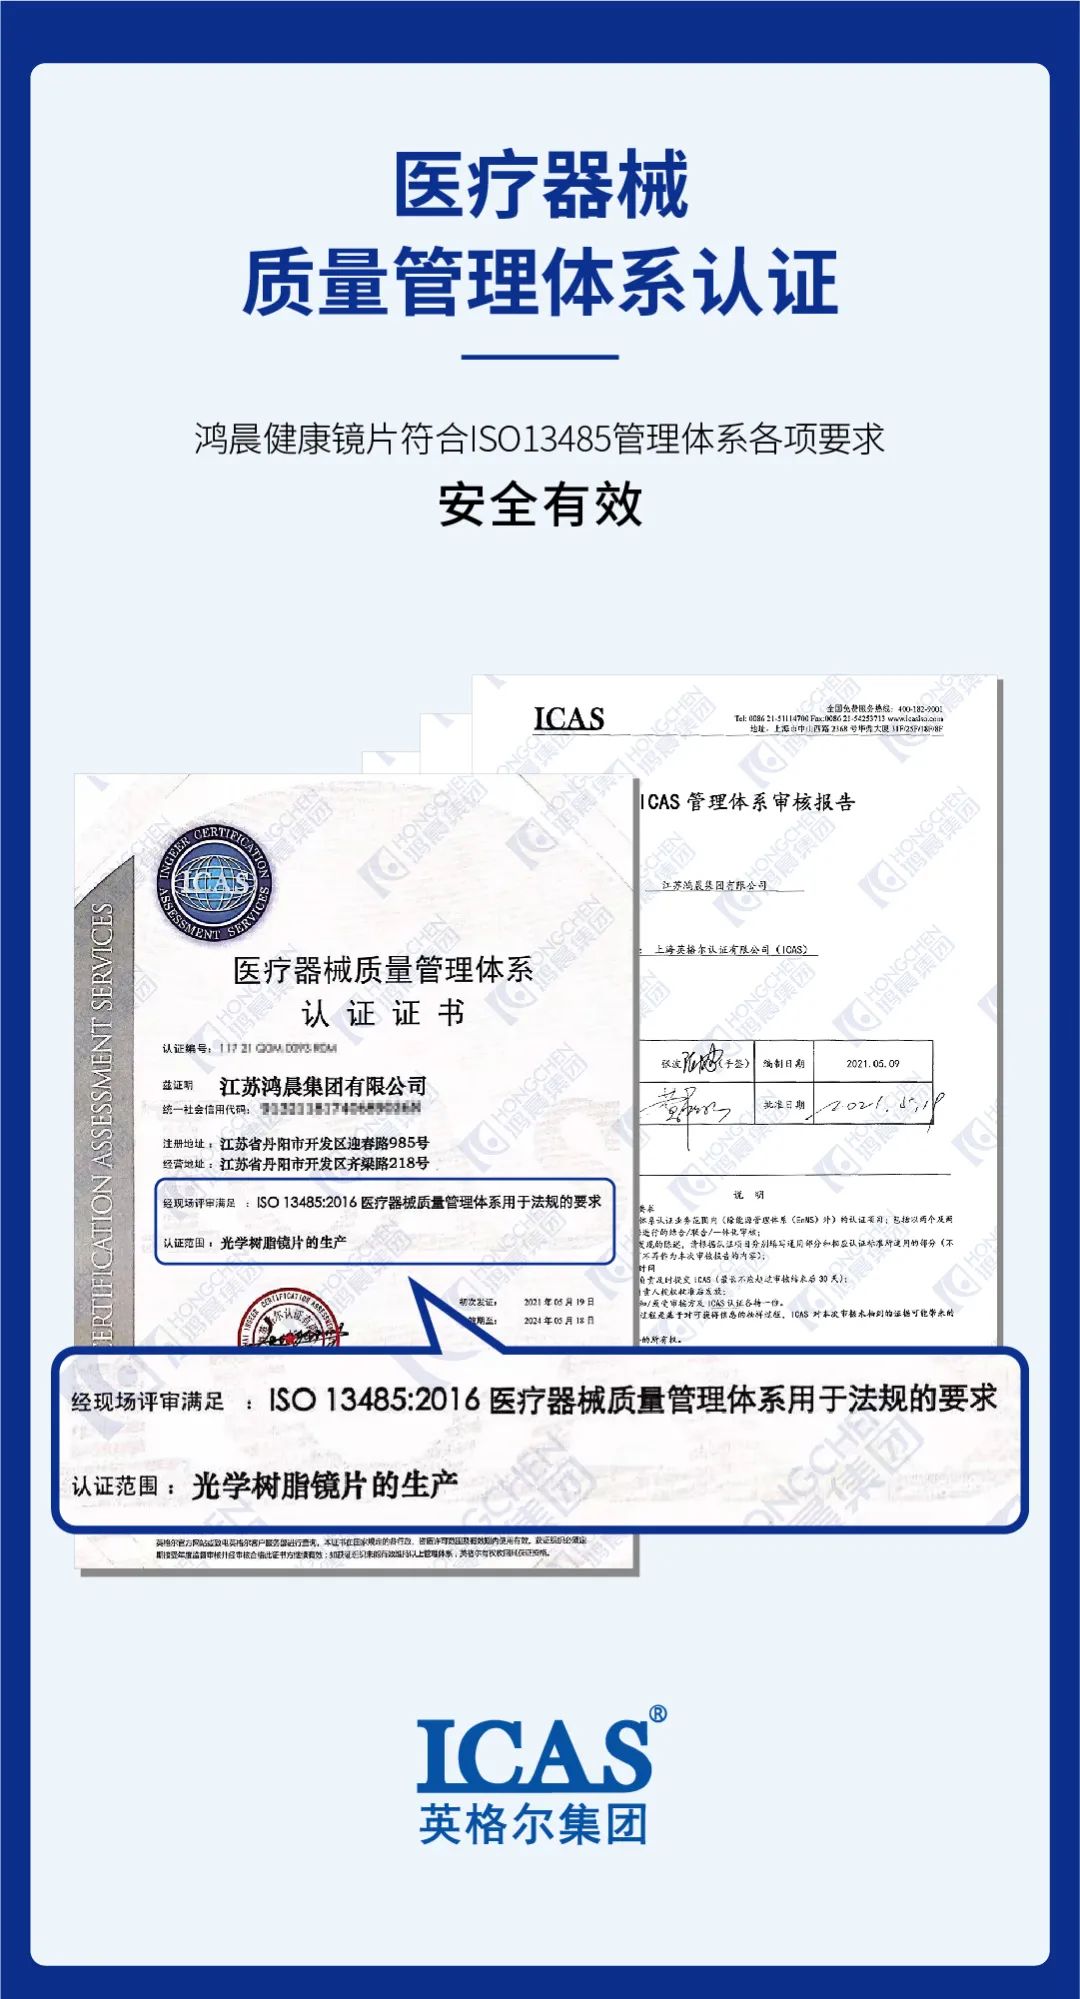 La lentille Hongchen a remporté la certification du système de sécurité médicale